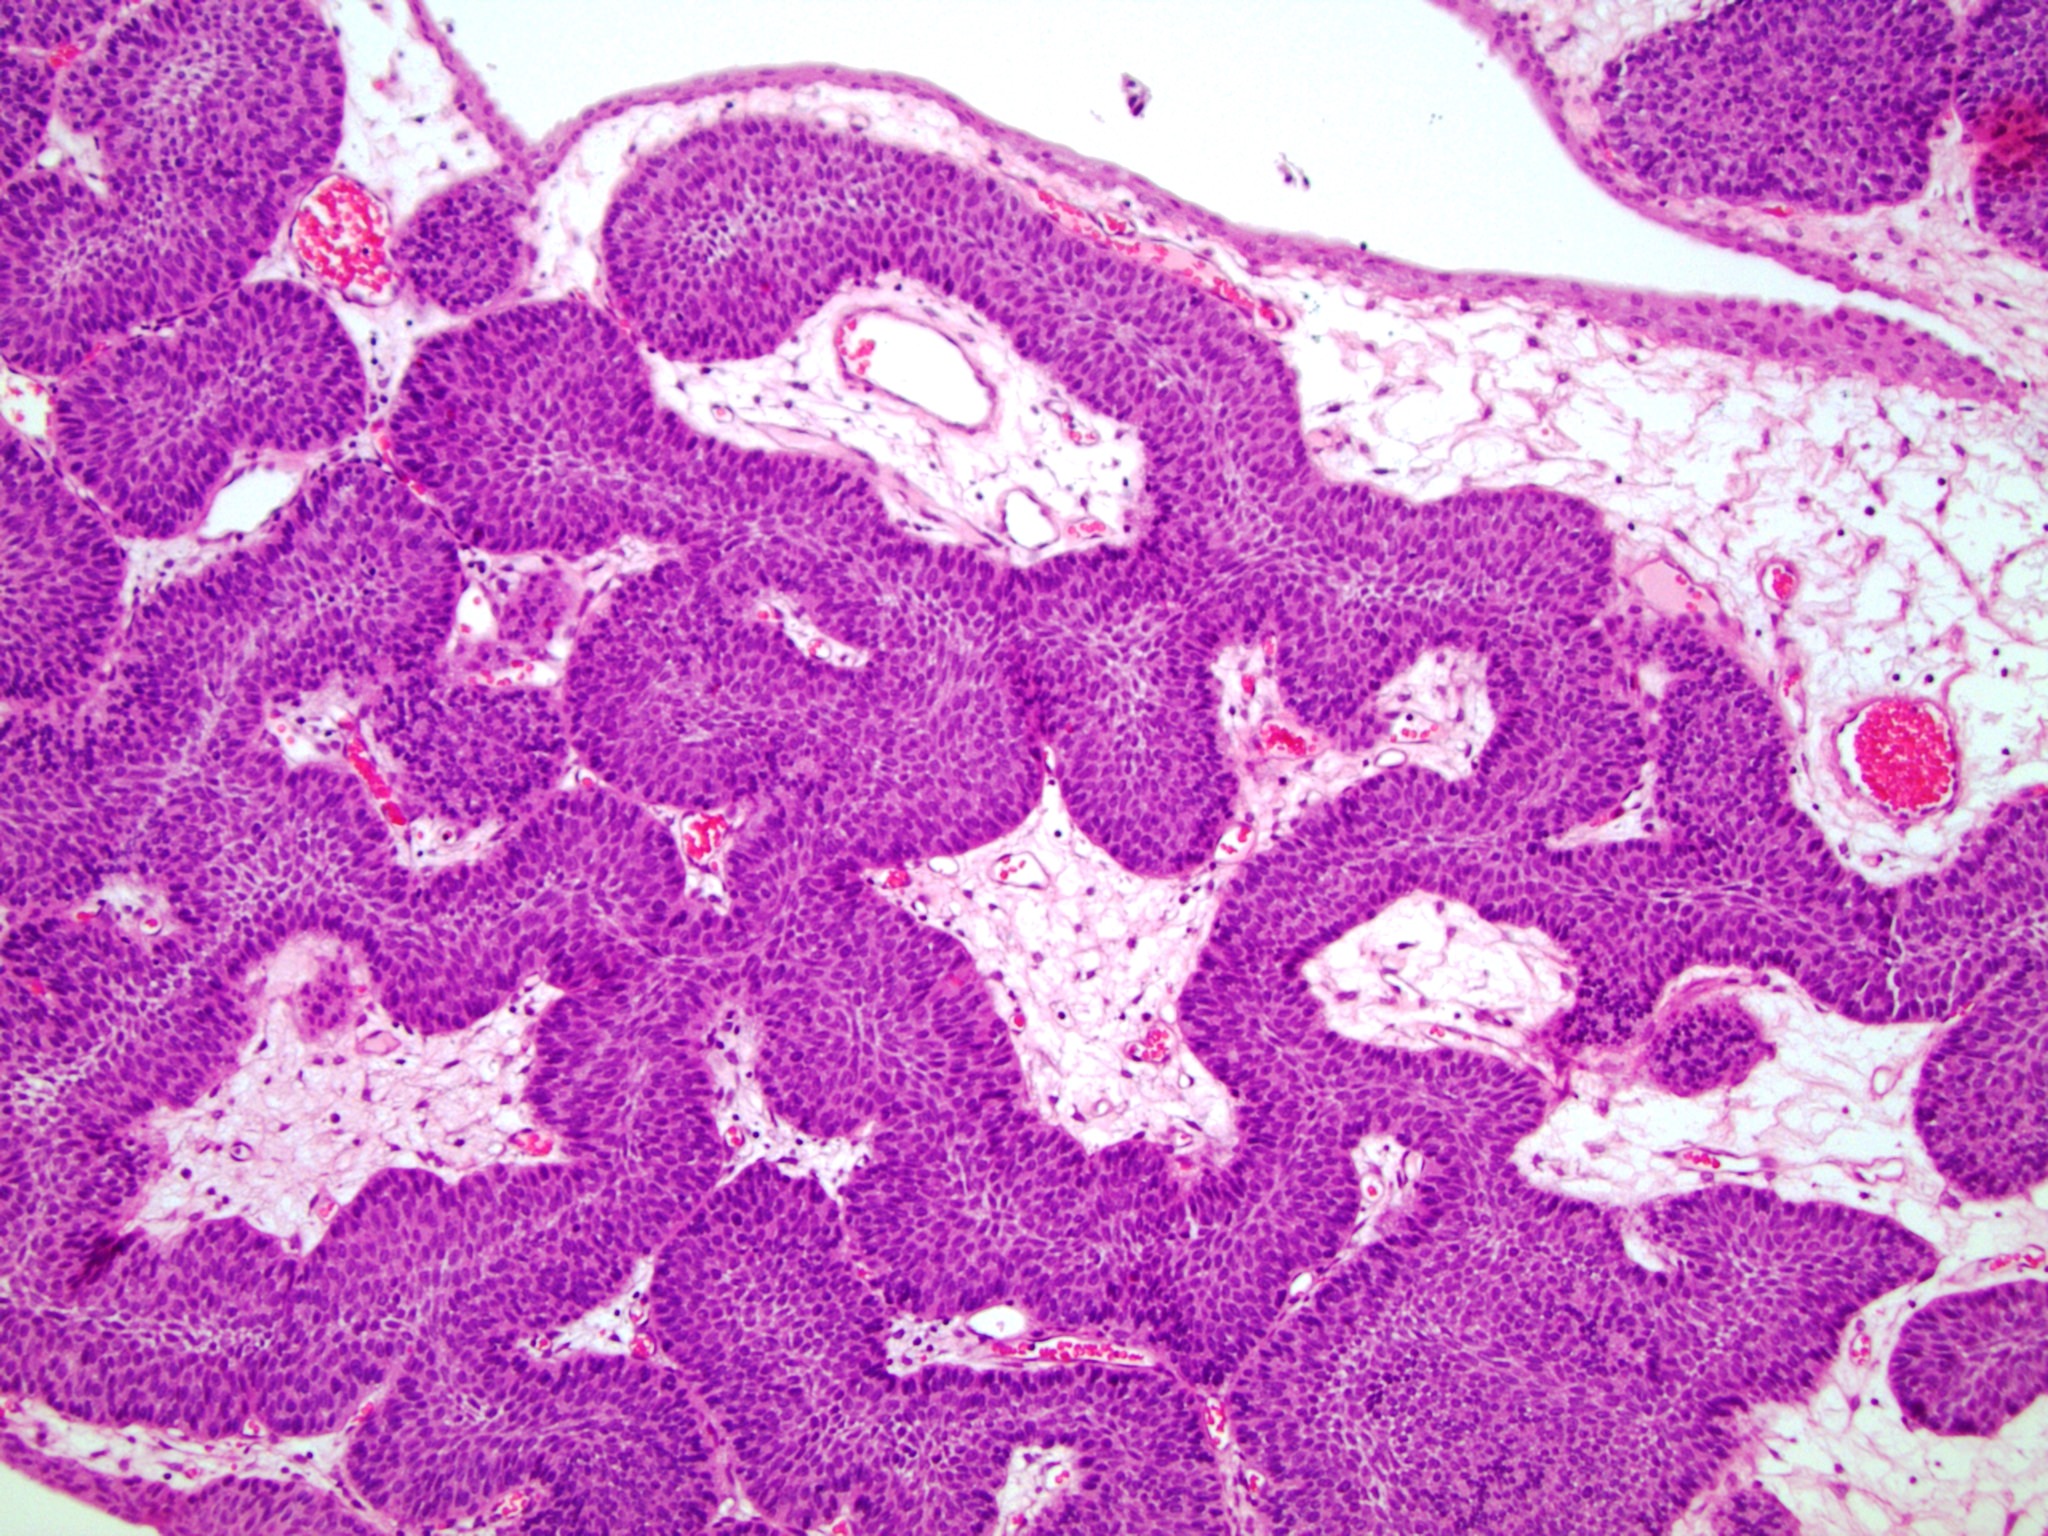 Inverted urothelial papilloma pathology, Urinary bladder inverted papilloma